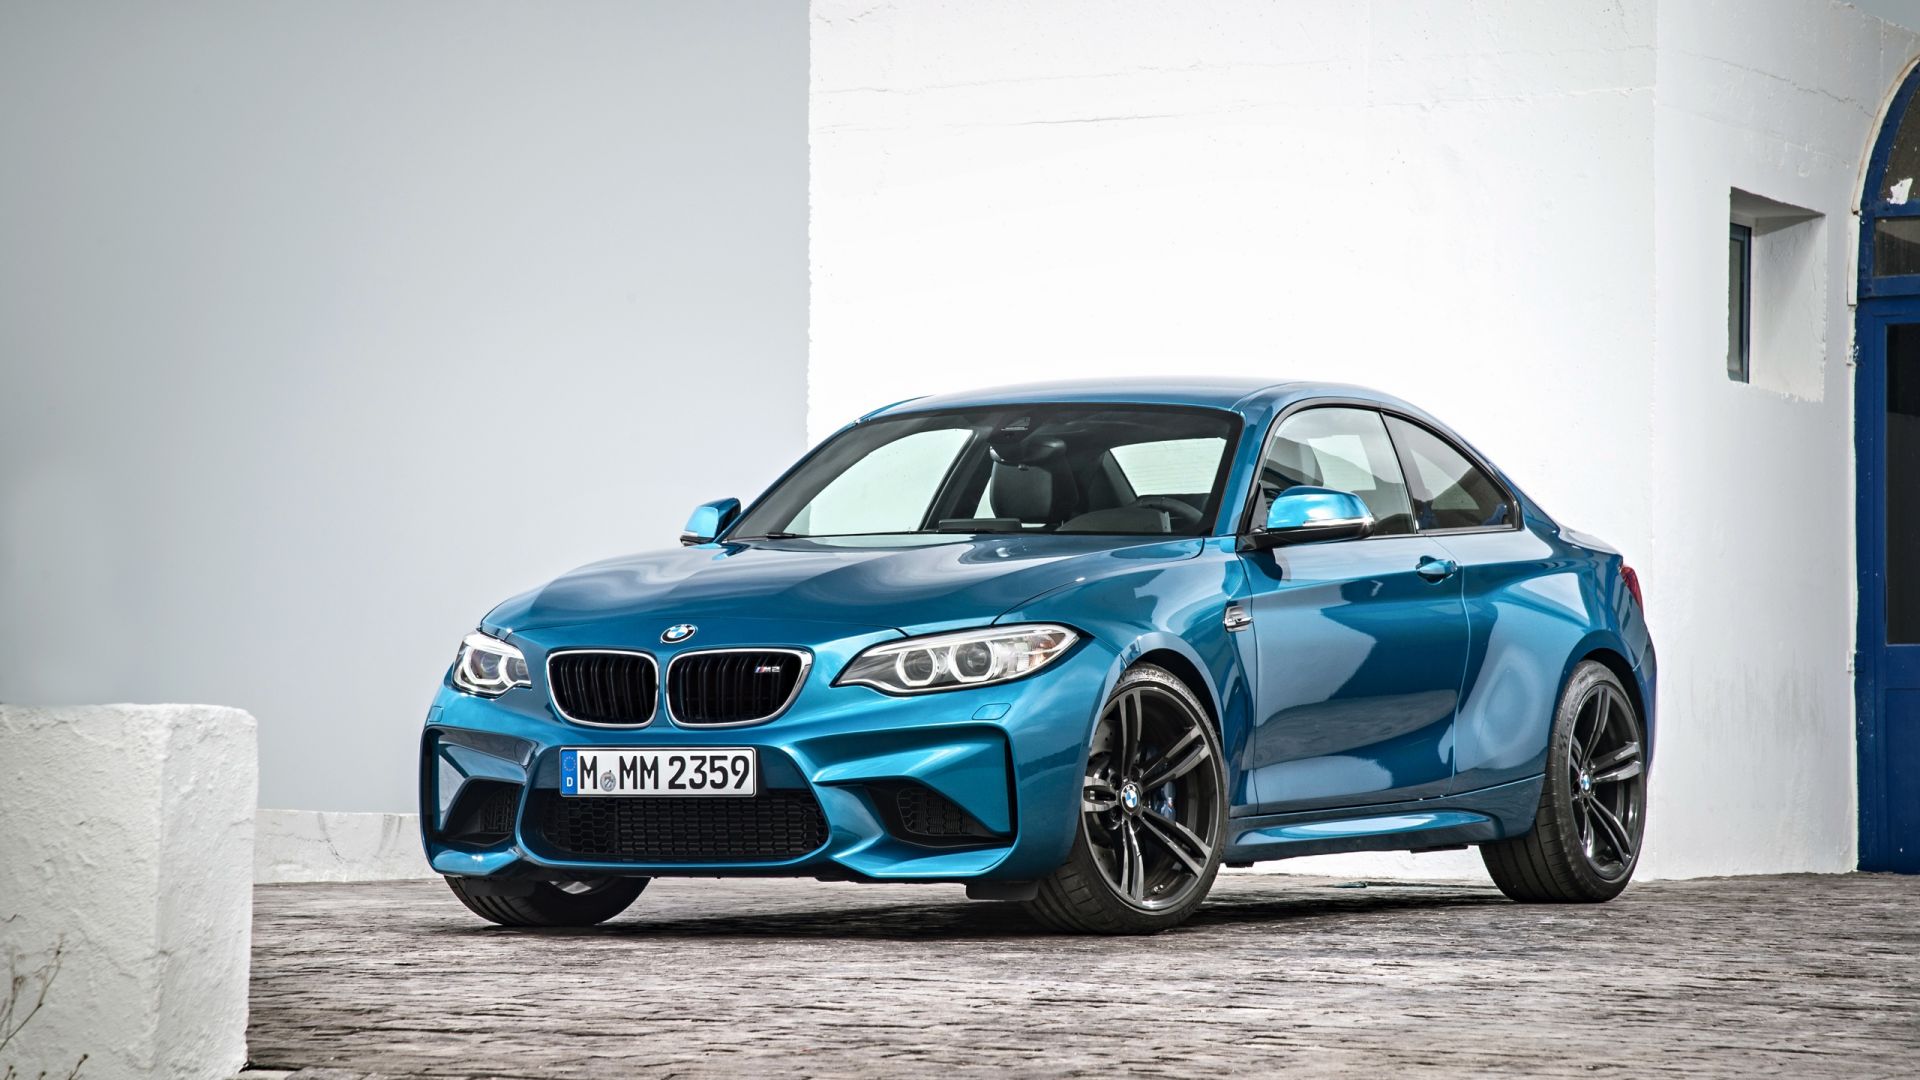 Wallpaper BMW M2, luxury car, blue car